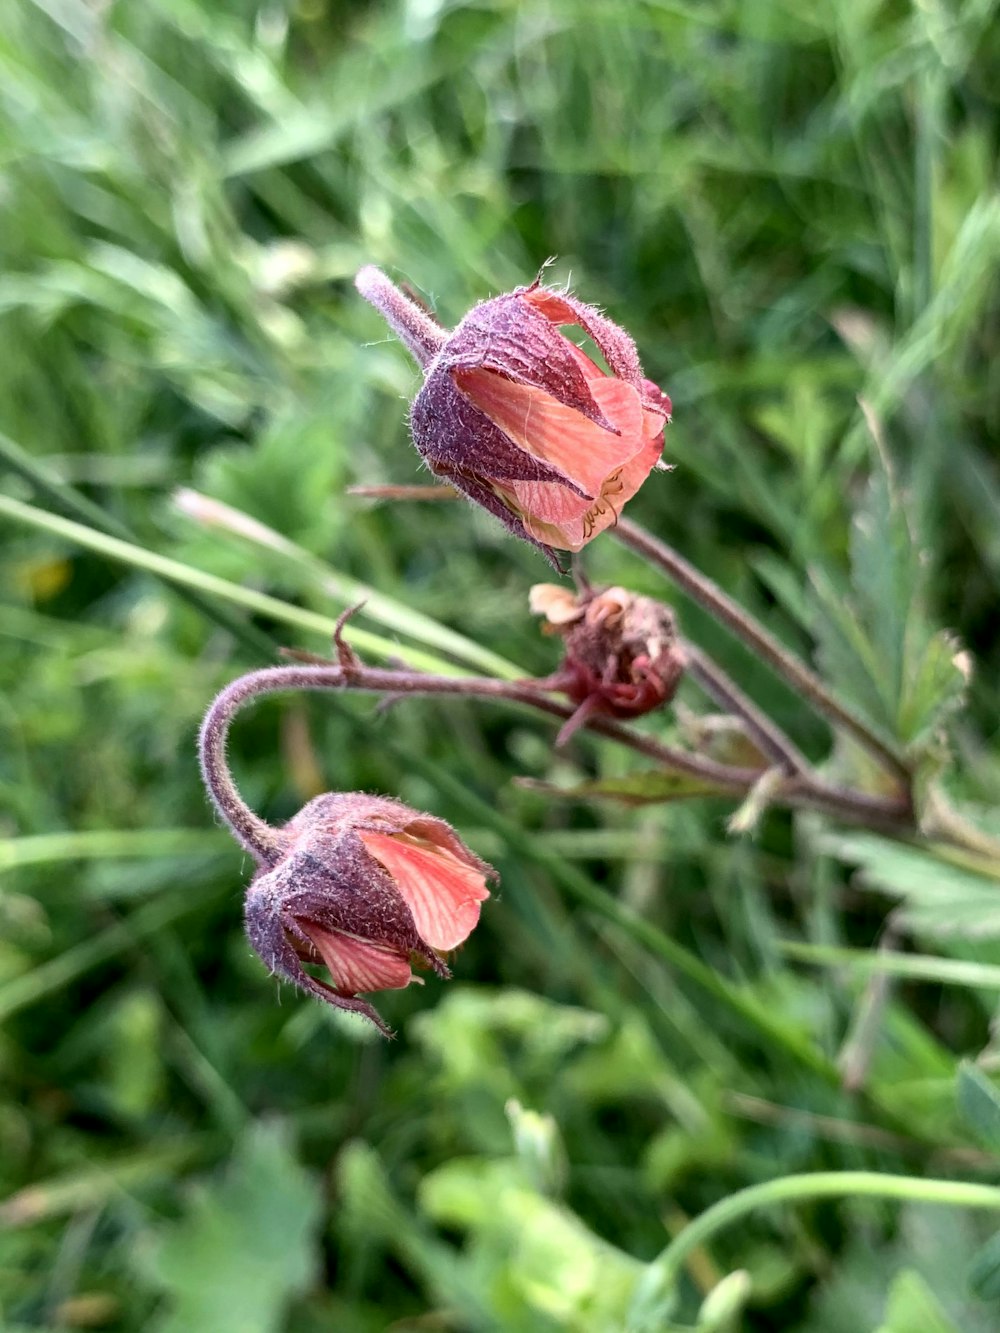 capullo de flor roja en fotografía de primer plano